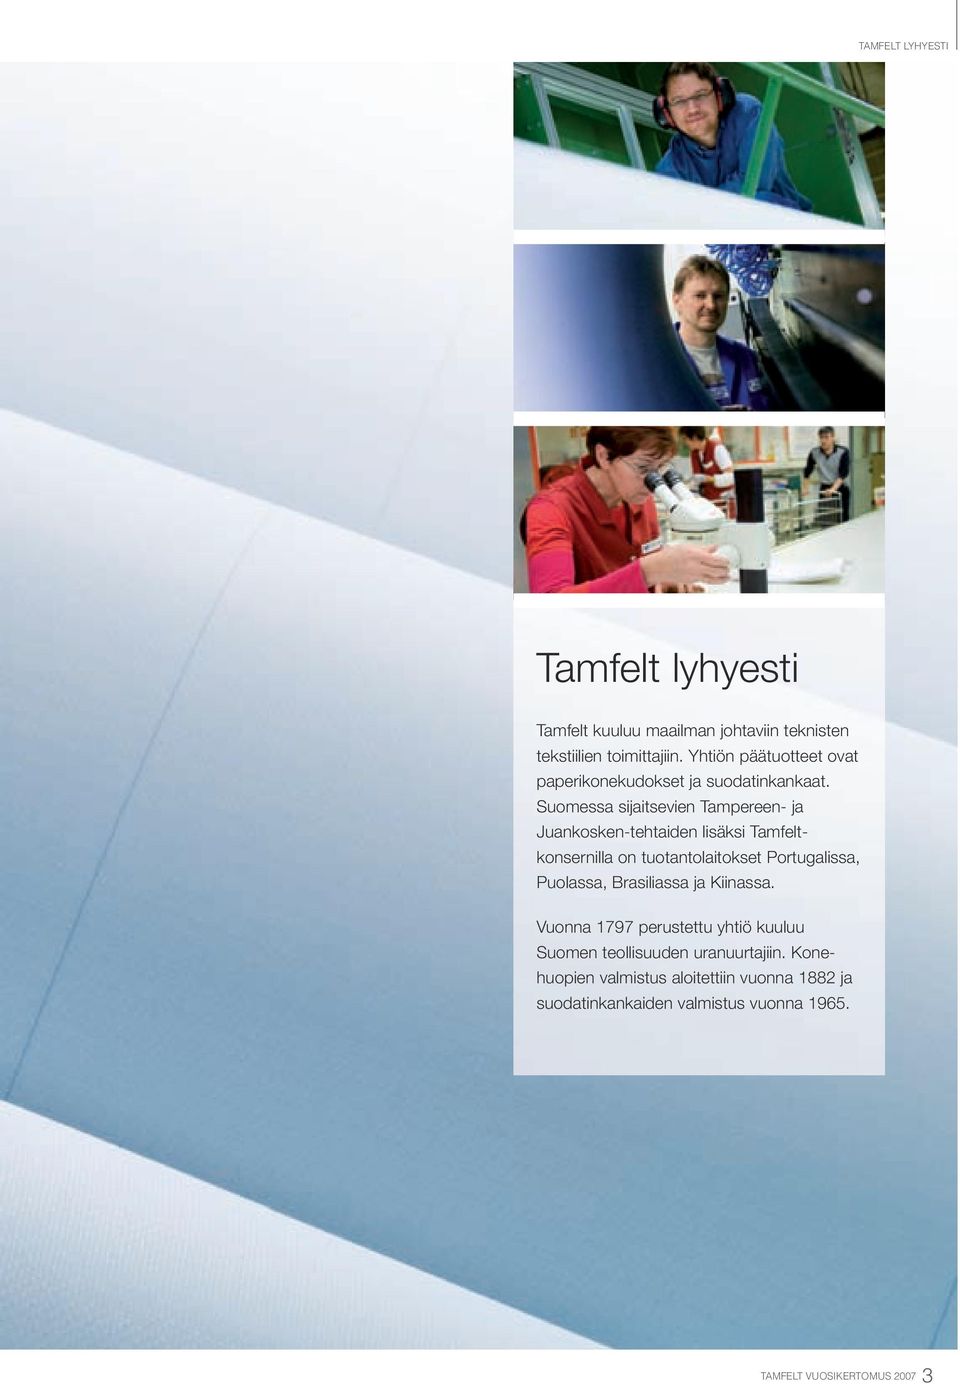 Suomessa sijaitsevien Tampereen- ja Juankosken-tehtaiden lisäksi Tamfeltkonsernilla on tuotantolaitokset Portugalissa,